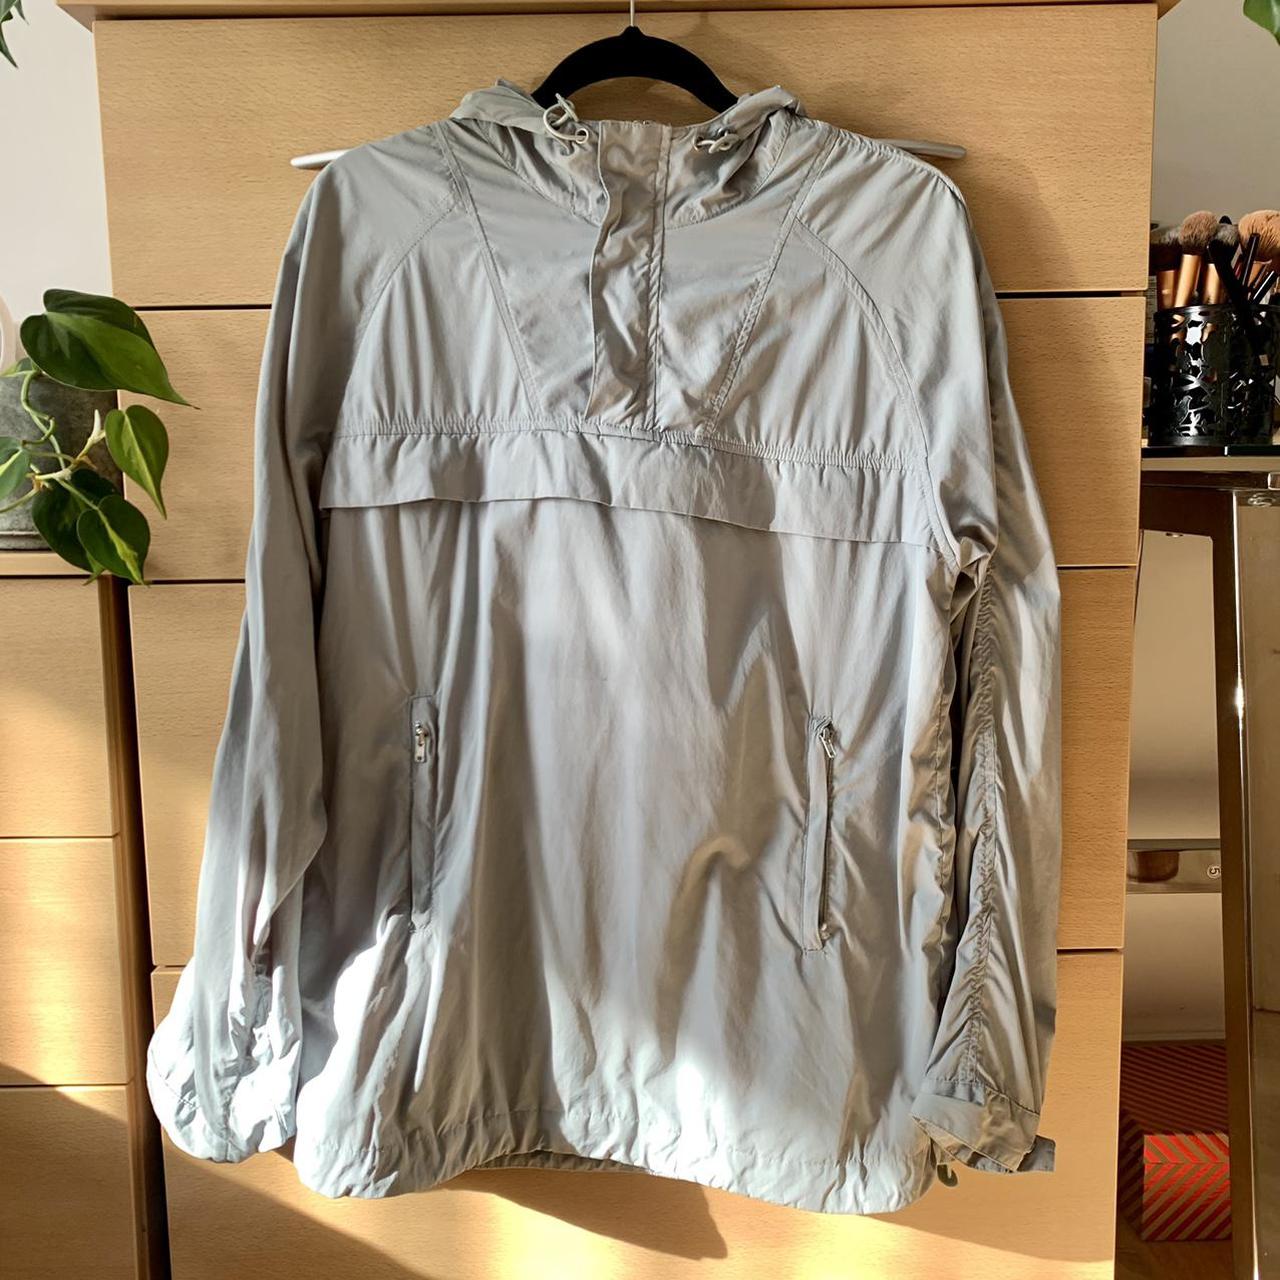 Product Image 1 - Menswear 
TopMan long waterproof jacket/hoodie